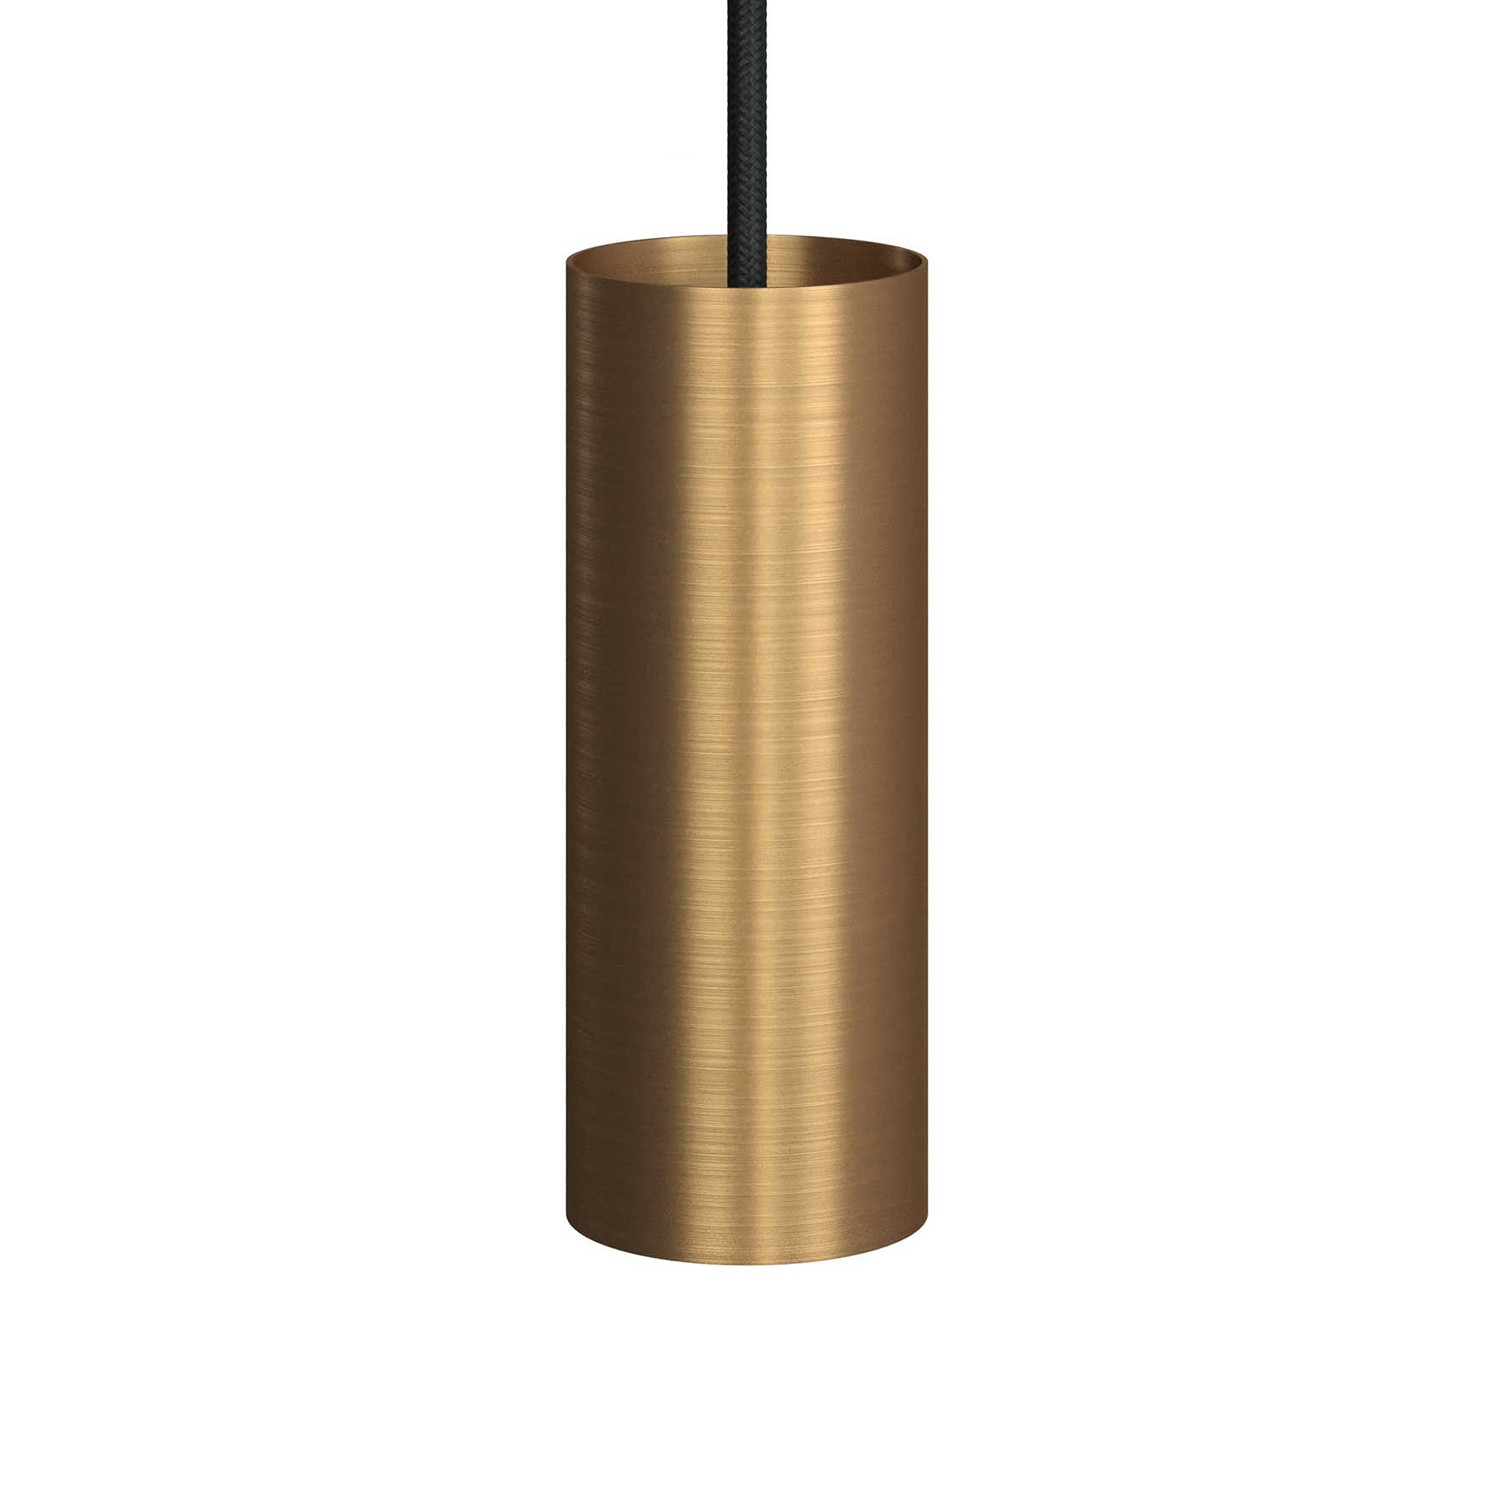 Tub-E14, tubo de metal para reflector con portalámparas de doble arandela E14